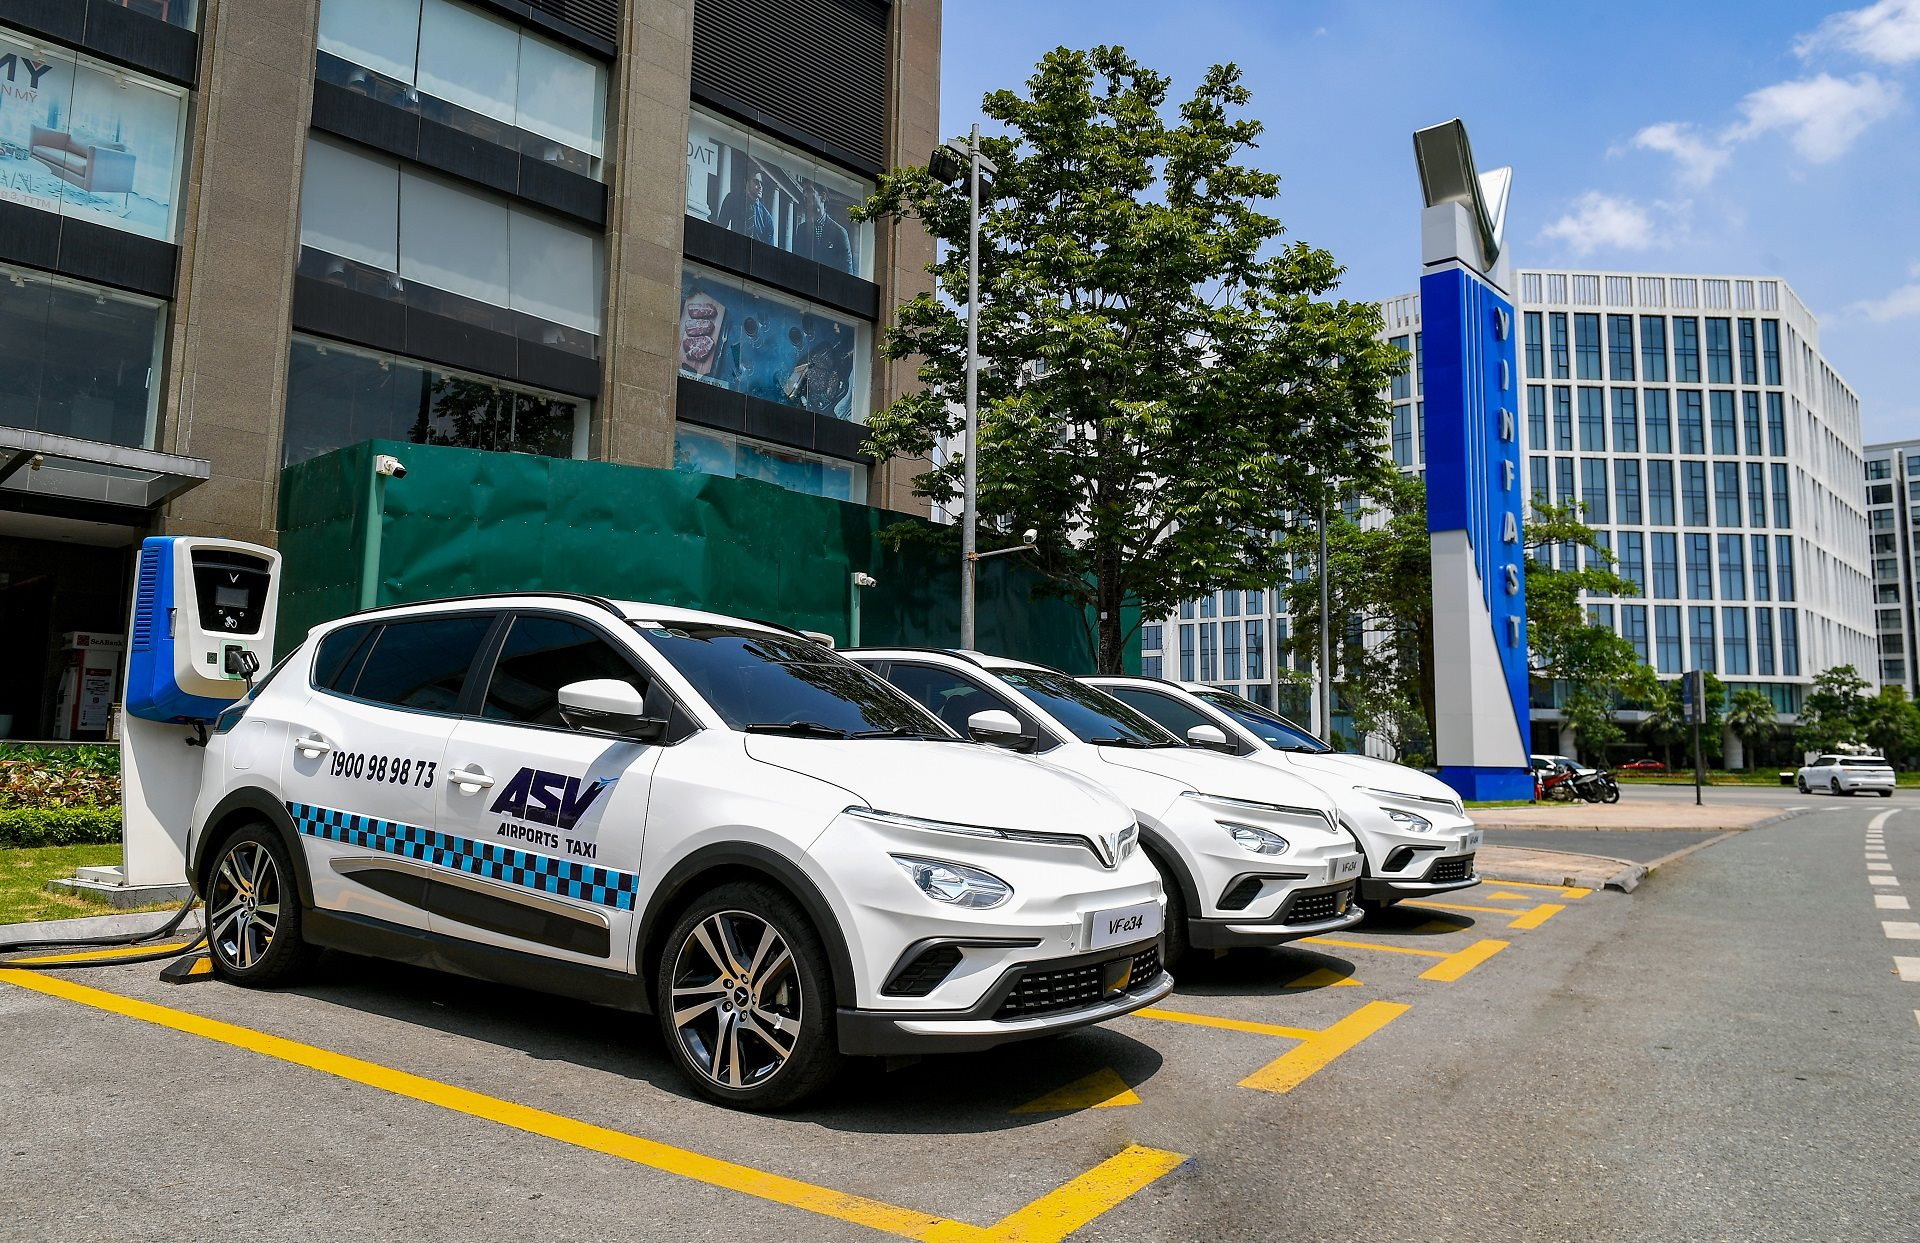 ASV Airports Taxi thuê 500 ô tô điện VinFast từ GMS, sẽ có taxi điện đưa đón khách đi Nội Bài, Tân Sơn Nhất - Ảnh 1.